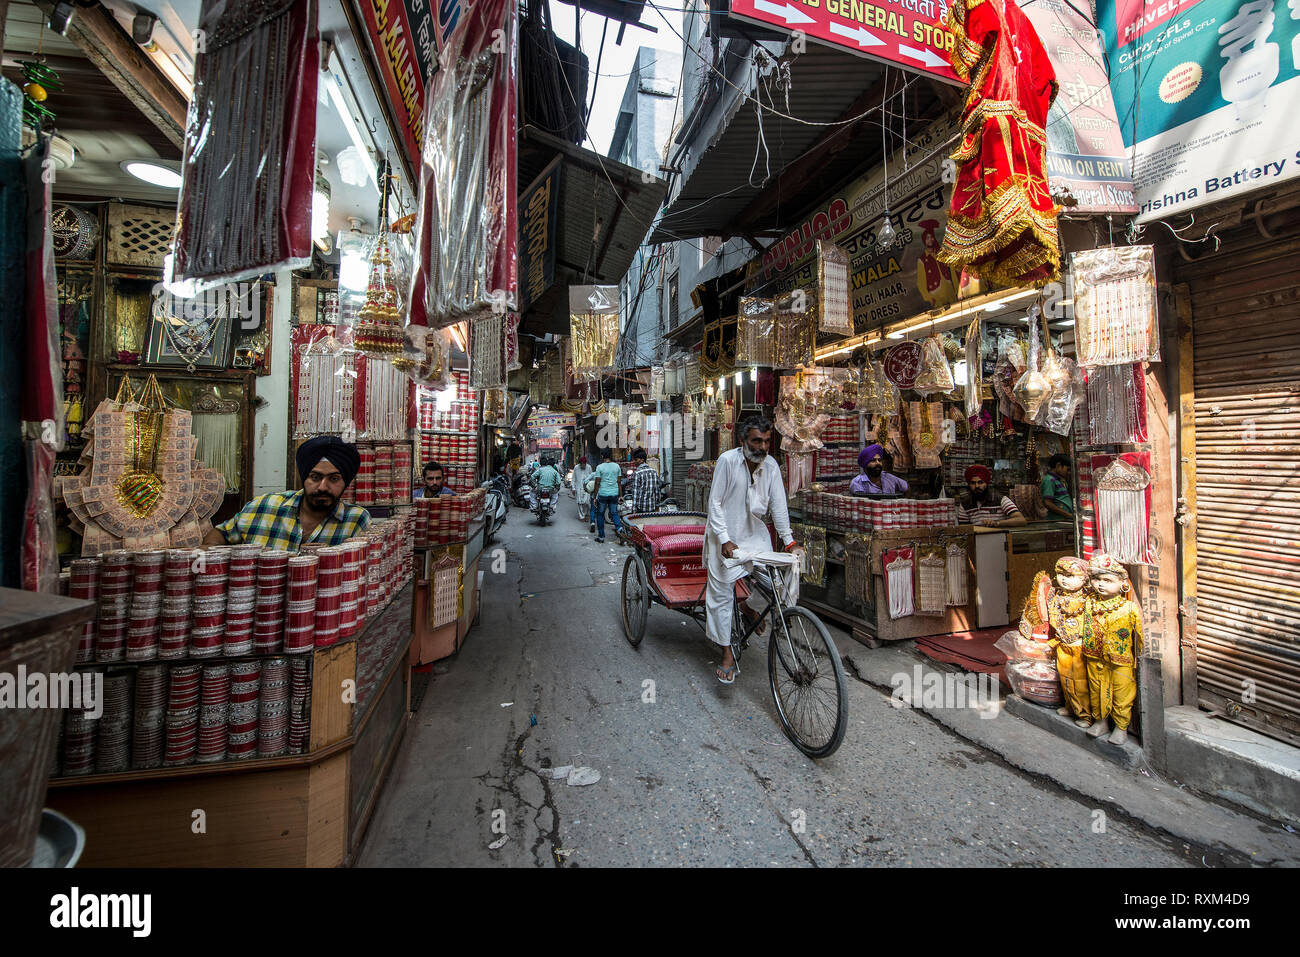 Indien, AMRITSAR, Cycle rickshaw vorbei durch einen engen Basar Straße mit kleinen Geschäften Stockfoto